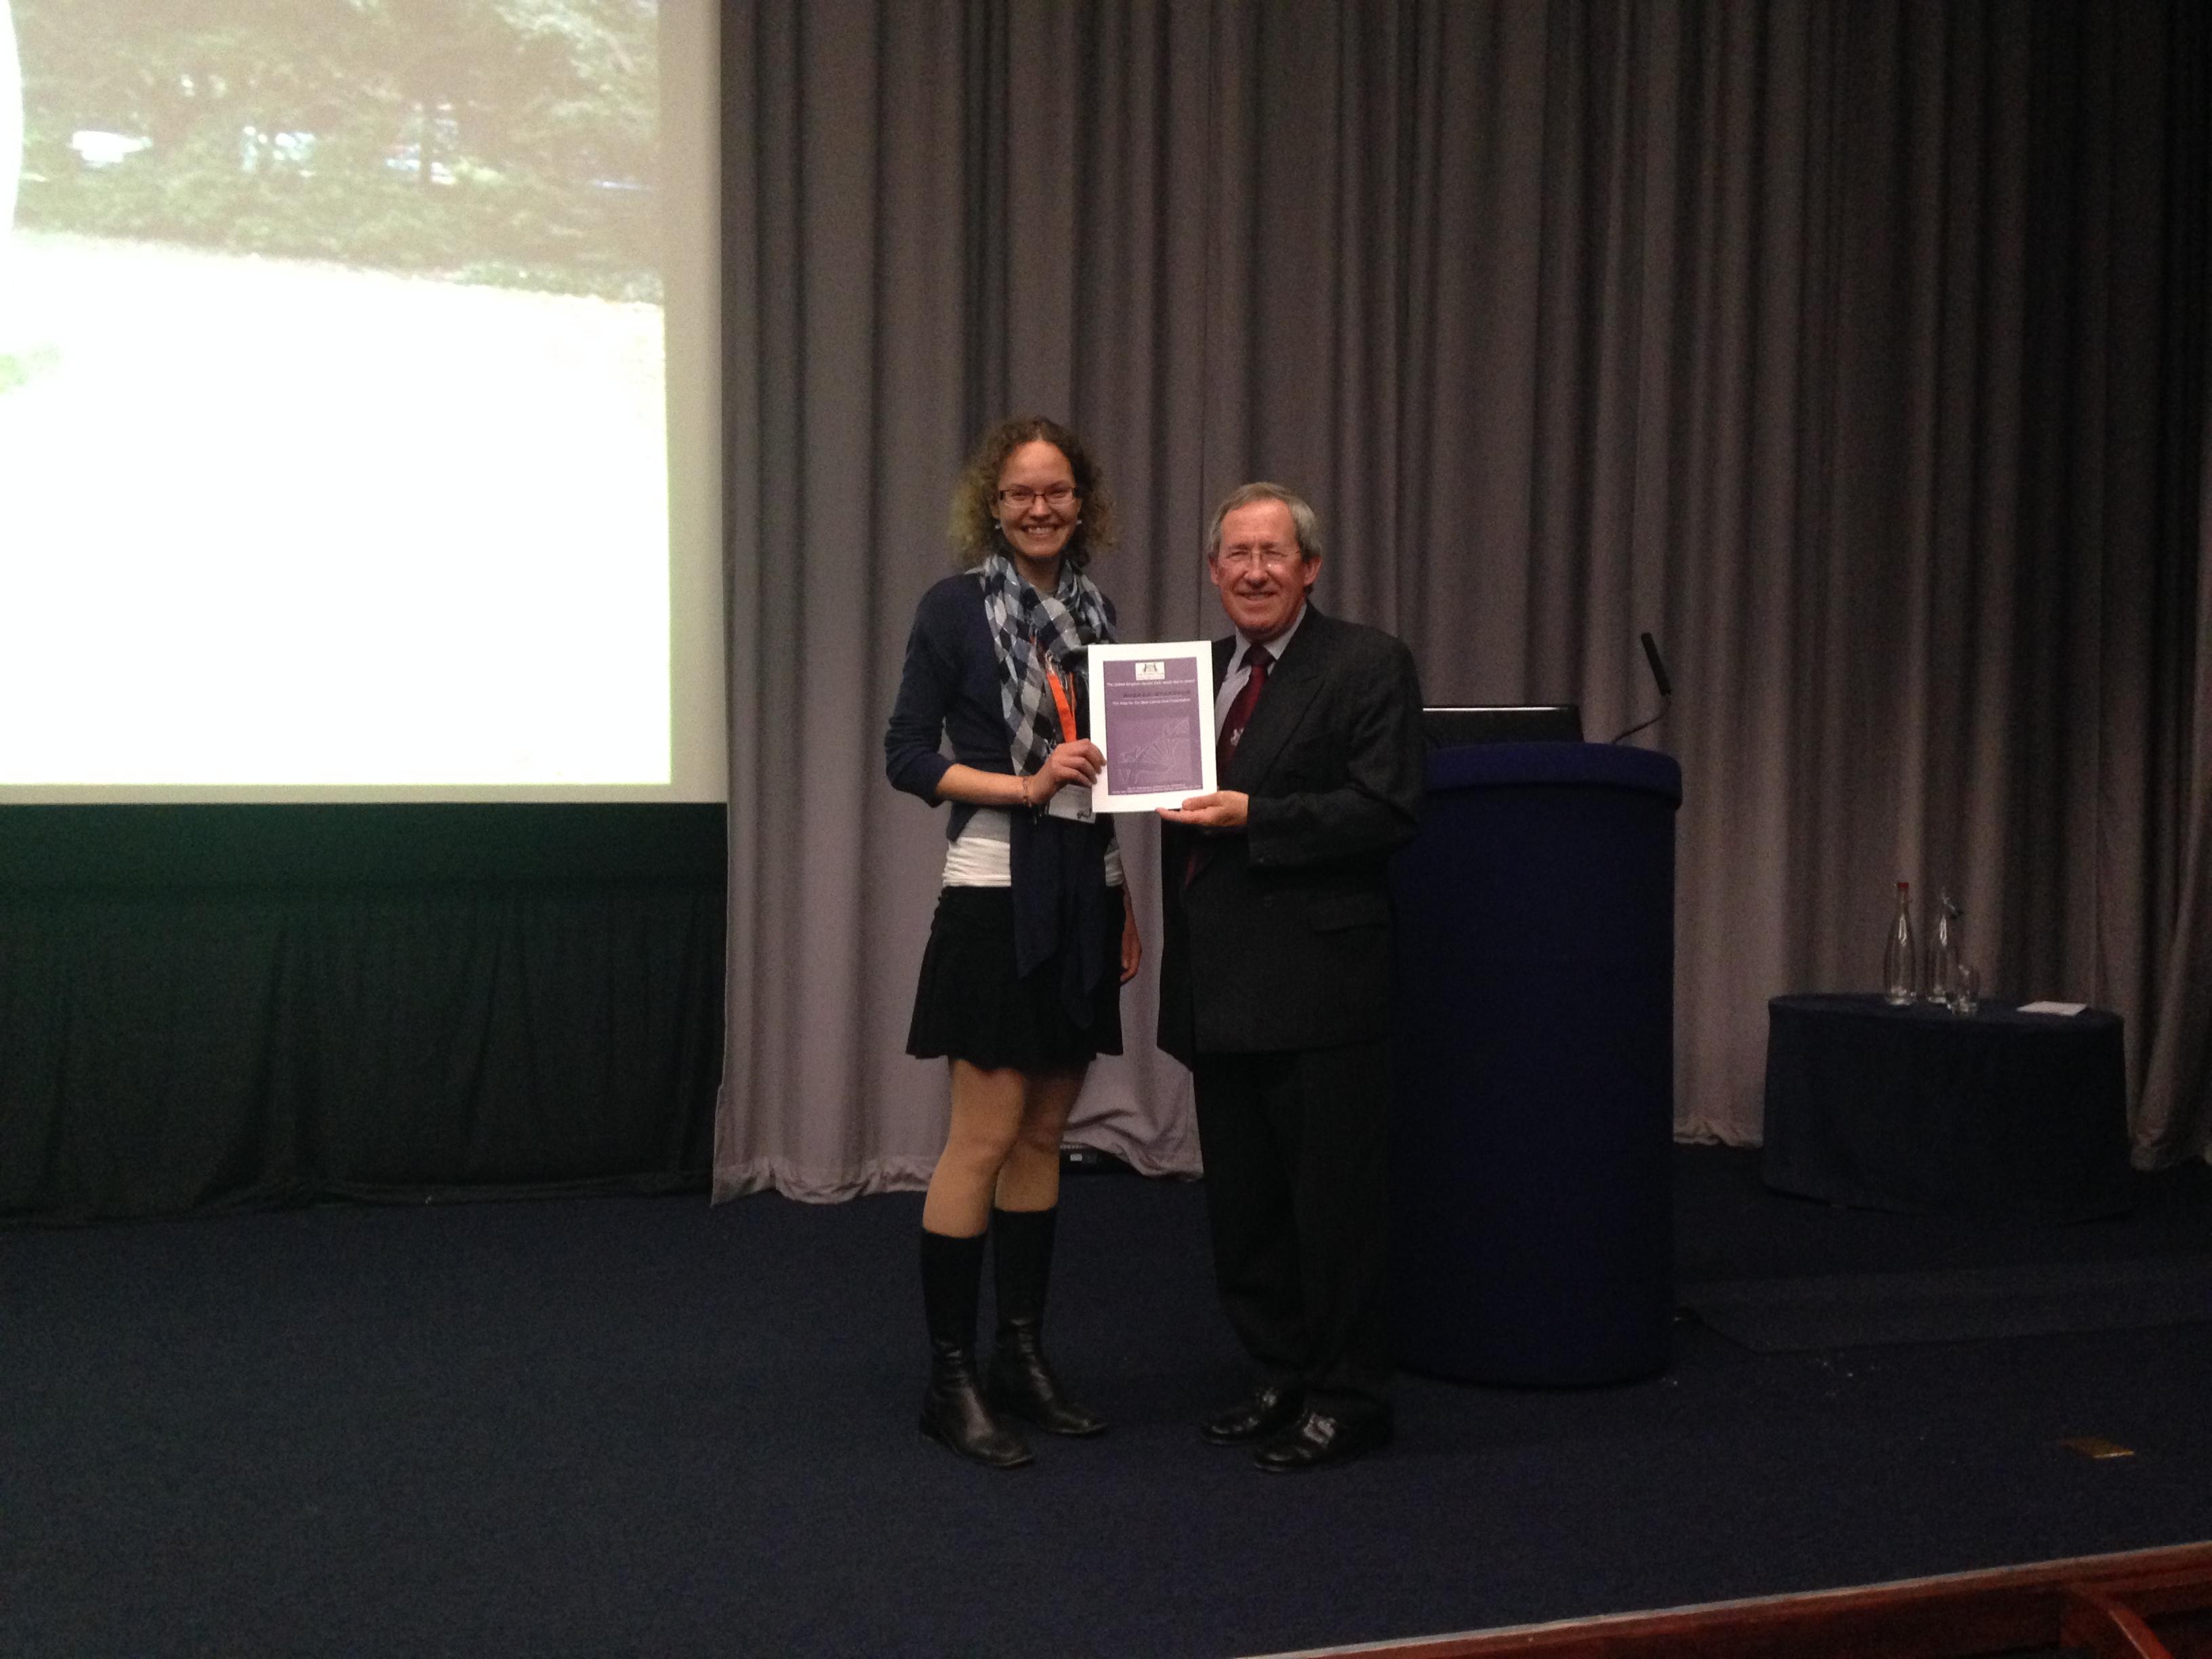 Andrea Strakova wins Kennel Club award for best student talk